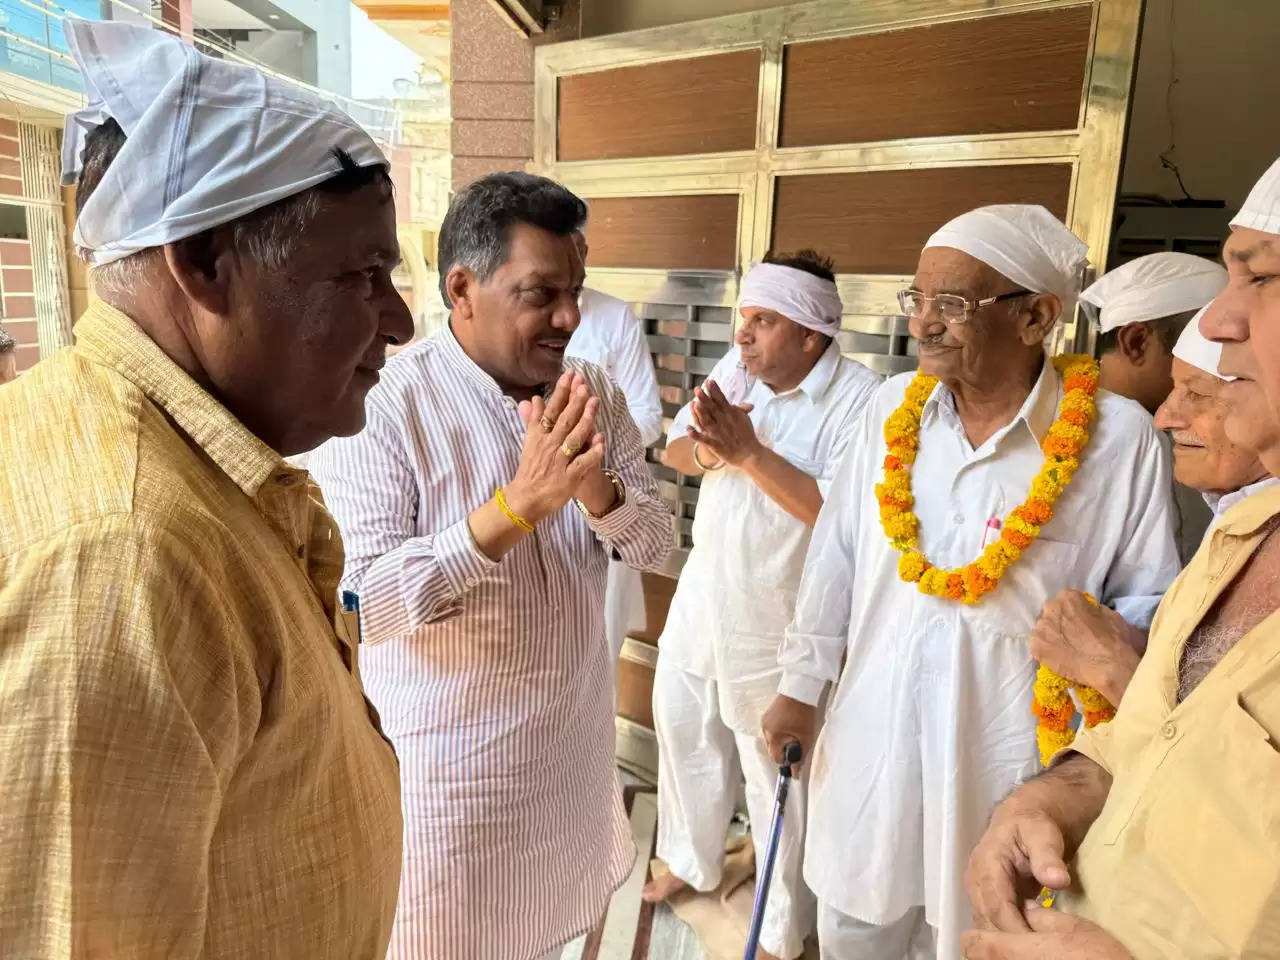 हरियाणा के सिरसा में श्री आनंदपुर आश्रम में धूमधाम से मनाया पांचवी पातशाही राजतिलक दिवस समारोह